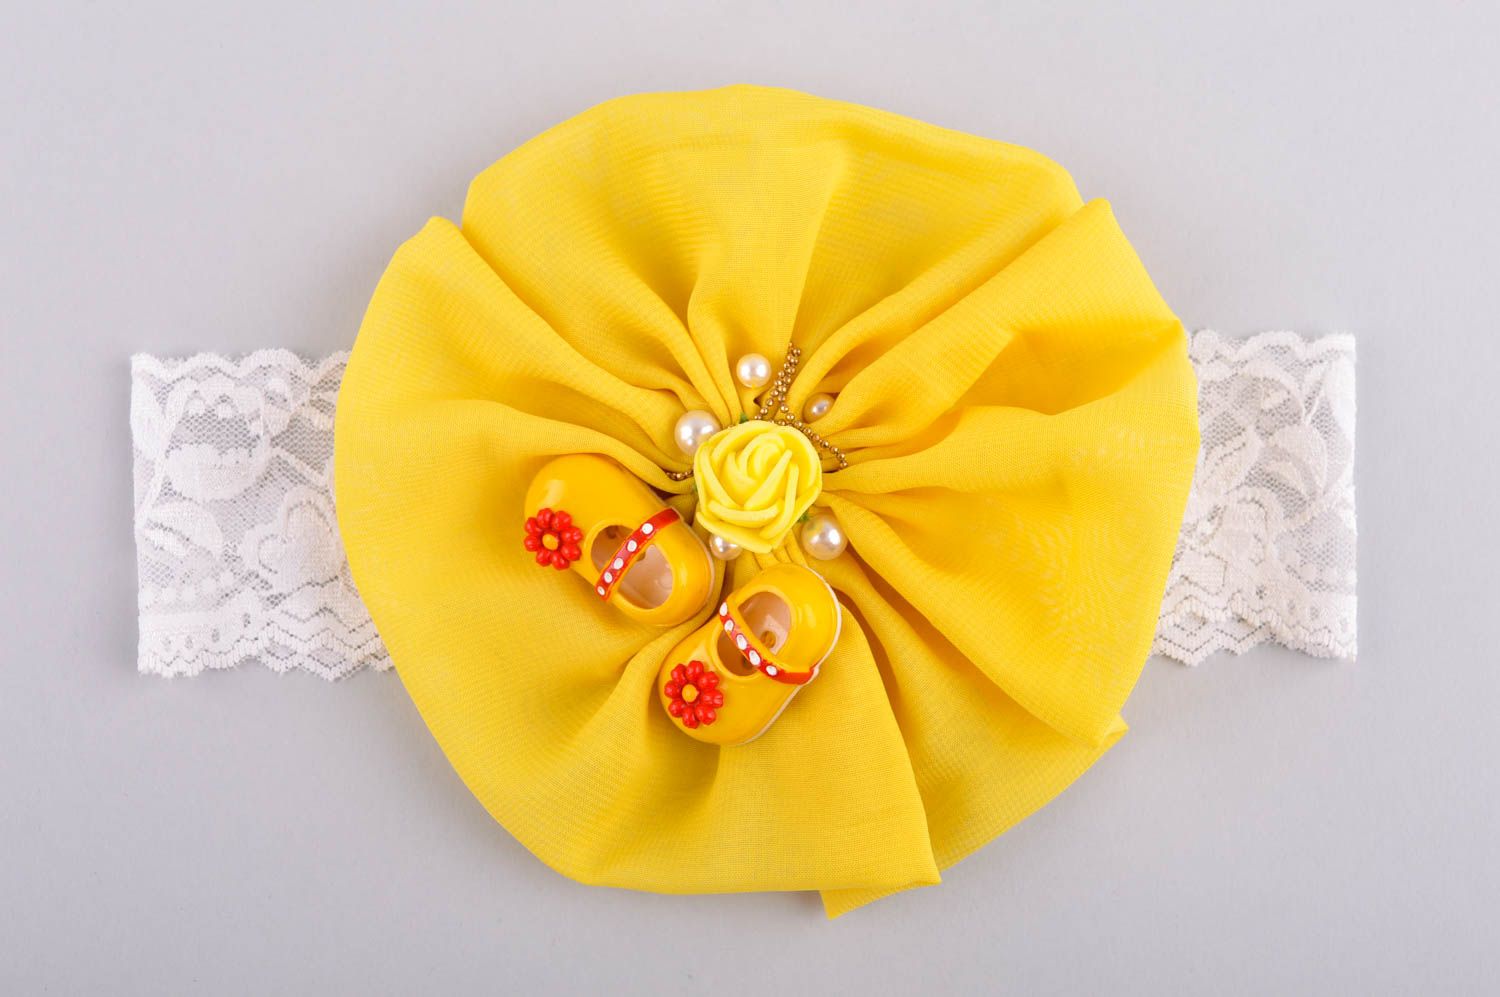 Handmade hair accessories flower headbands girls headbands gifts for kids photo 4